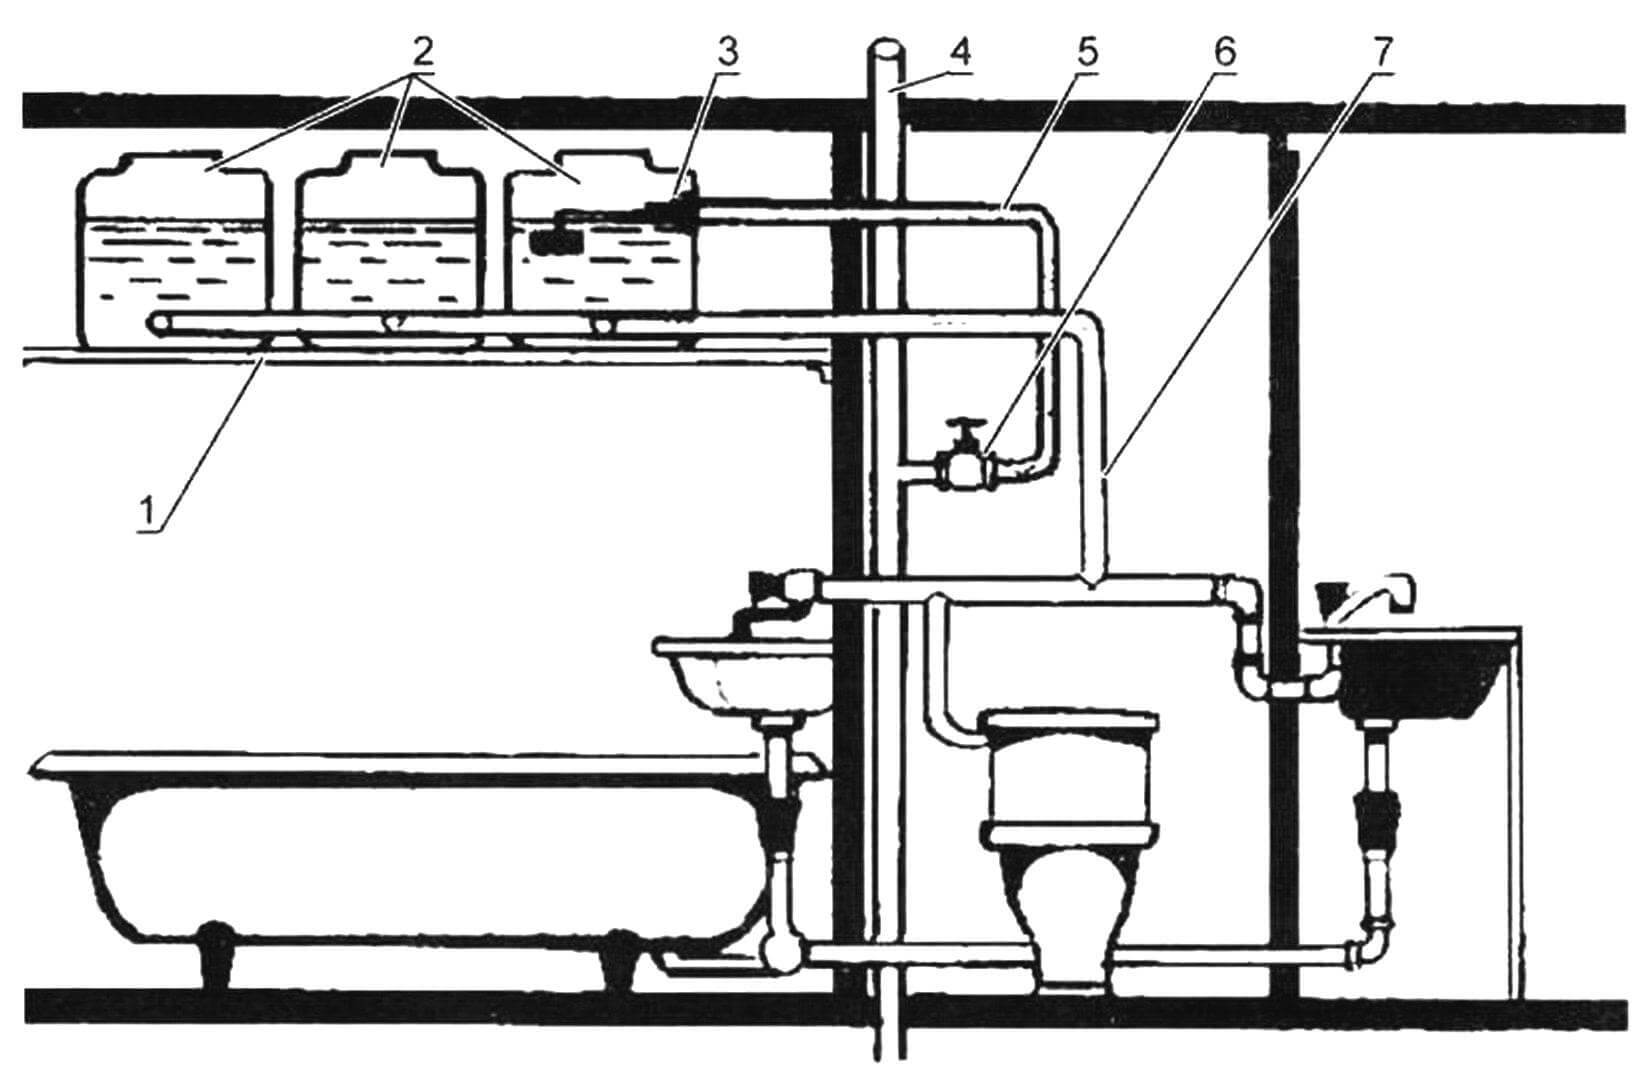 Схема подключения резервной водонапорной емкости: 1- щит антресоли; 2 - резервная емкость (на рисунке составная емкость из трех пластиковых баков); 3 - поплавковый клапан (от сливного бачка); 4 магистральная труба водопровода; 5 - подводящая труба; 6 - входной вентиль; 7 - труба, соединяющая резервную емкость с потребителями